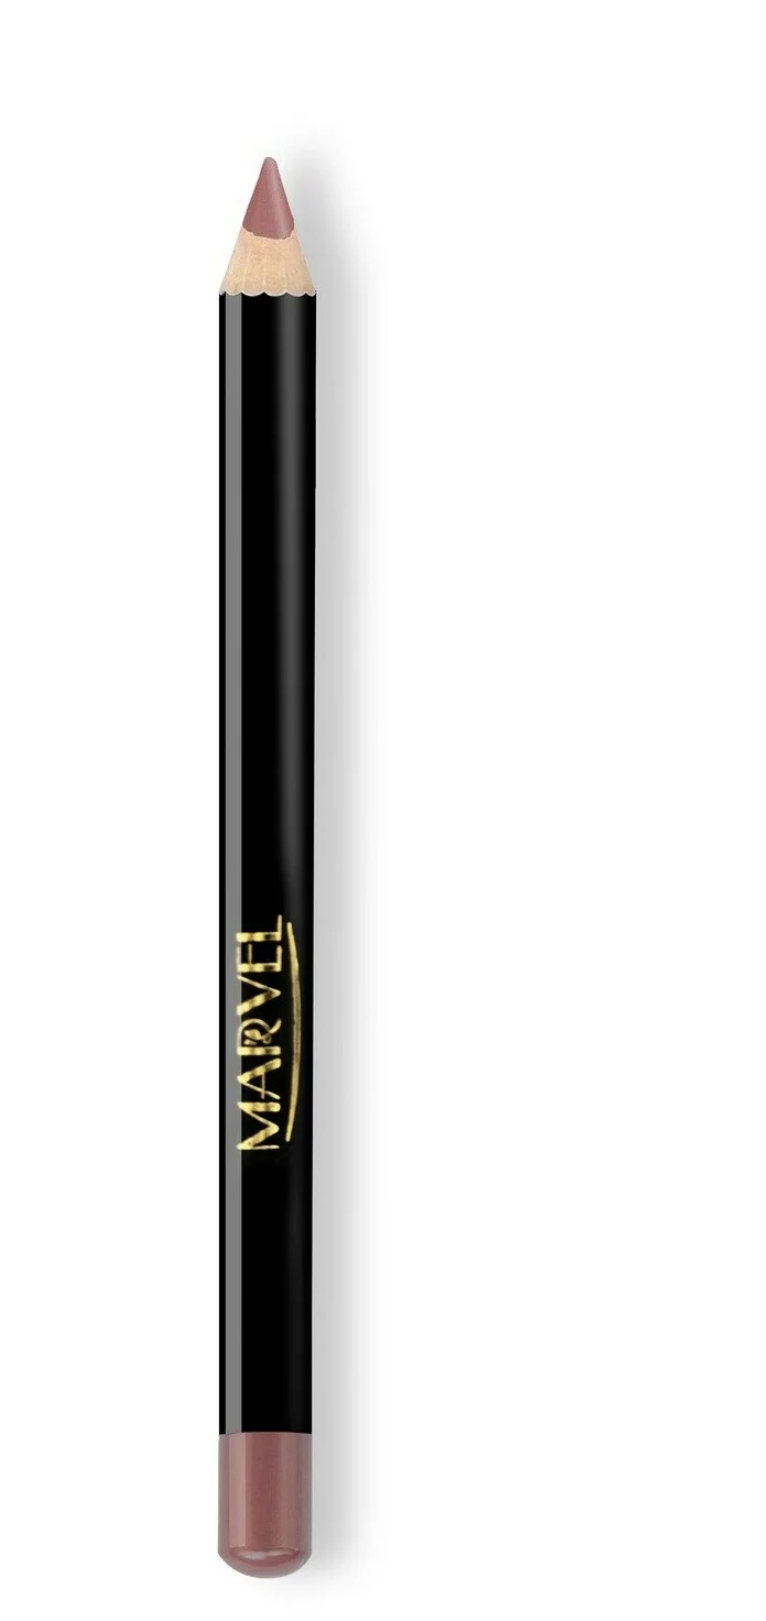    / Marvel Cosmetics -    Lip Liner Pencil  321 Natural Beige